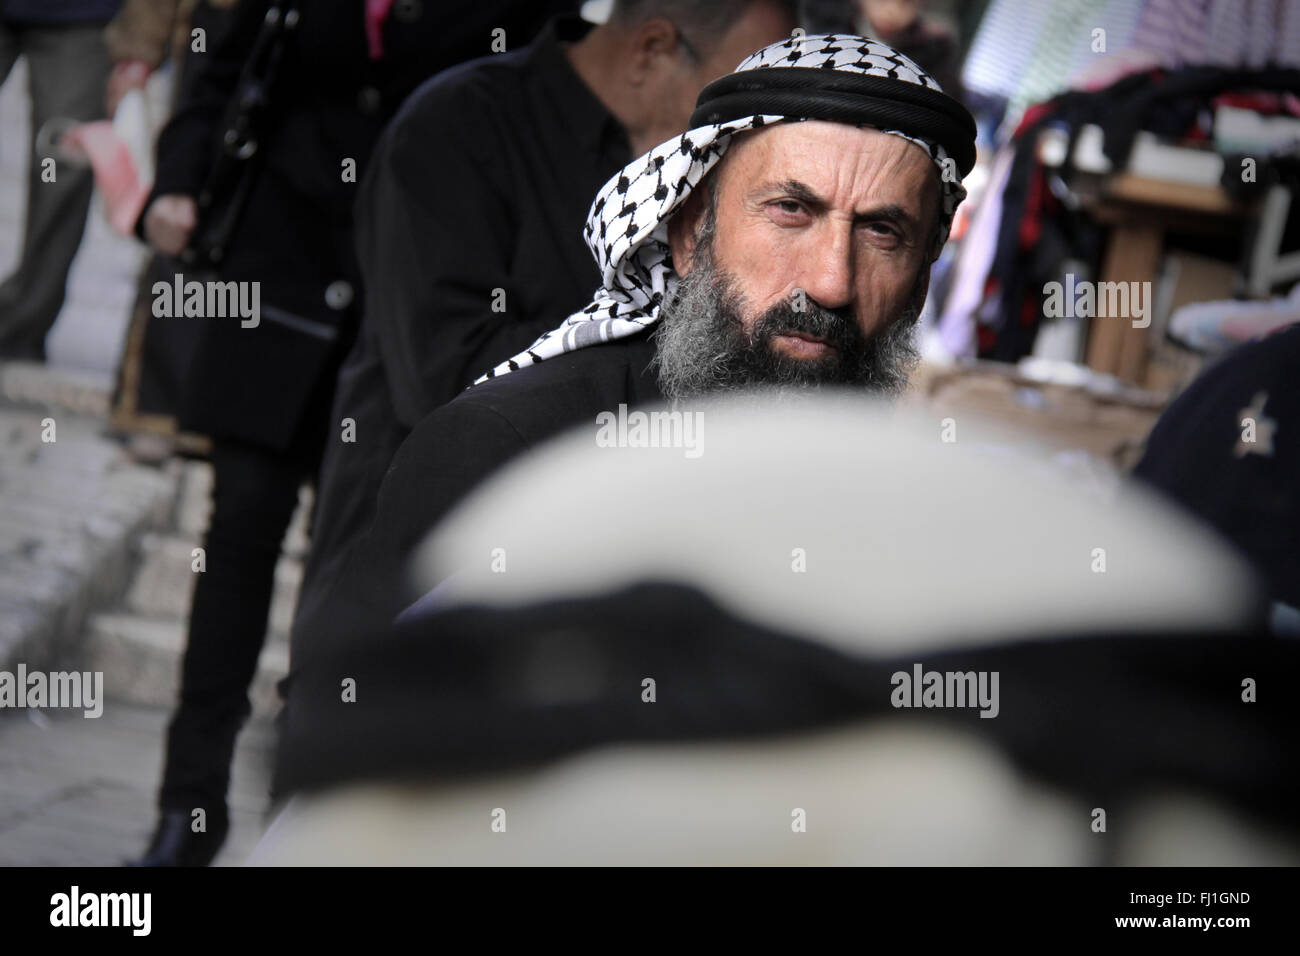 Arab  Palestinian man wearing keffieh in the crowd near Damascus gate in Jerusalem , Israel Stock Photo